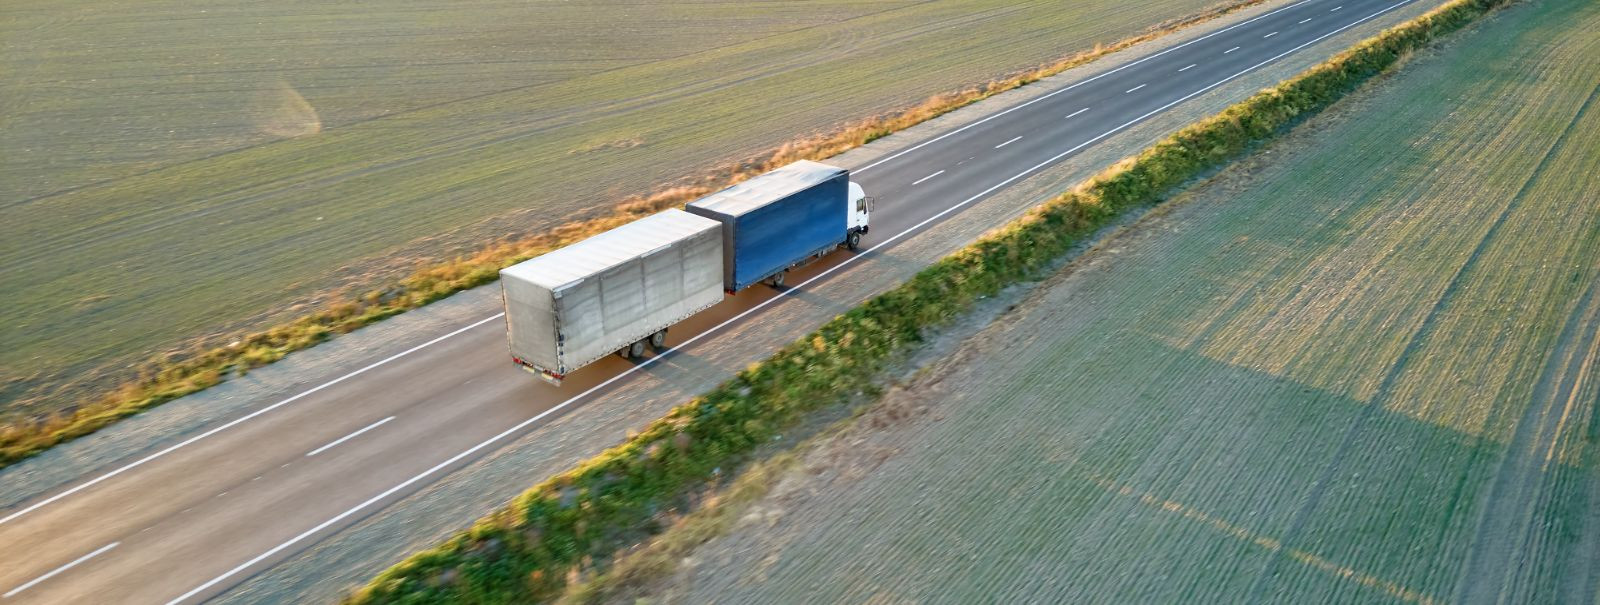 Tonikseri OÜ põhitegevusalaks on transporditeenuse pakkumine läbi logistikafirma. Pakume ka ehitusmaterjali ostuvõimalust koos transporditeenusega . Lisaks on p